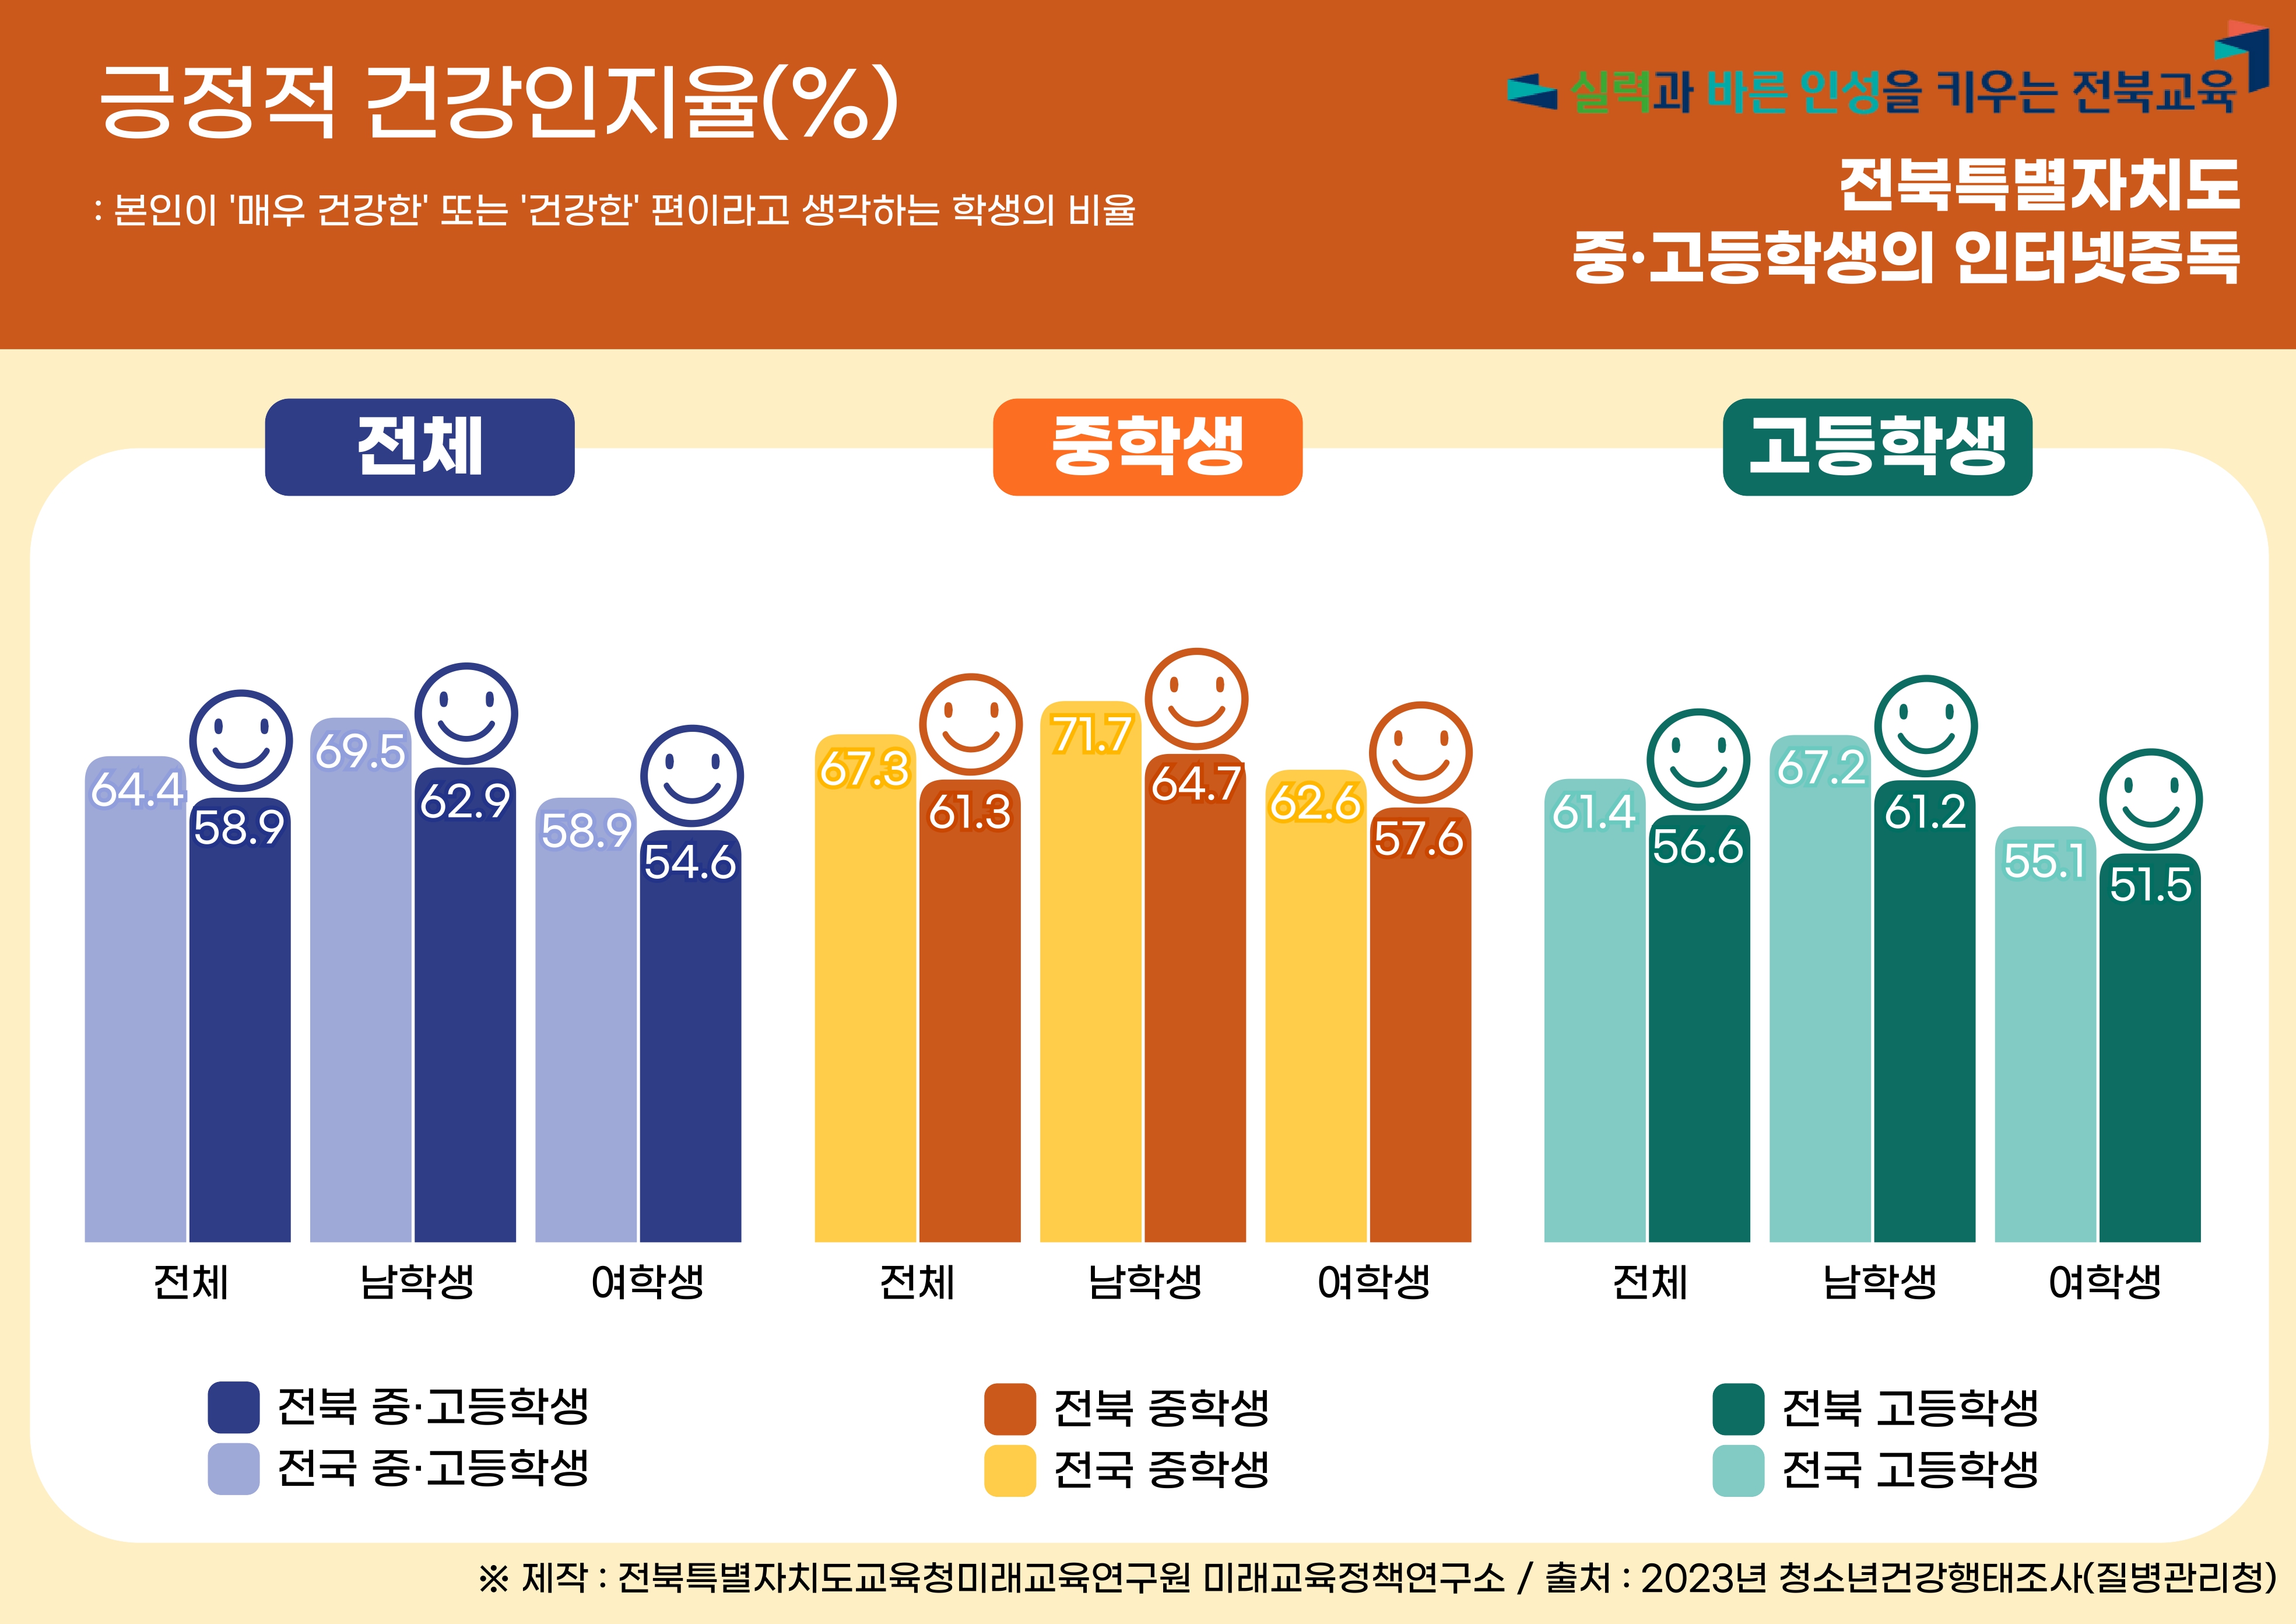 2023년 전북특별자치도 청소년 건강행태 :  긍정적 건강인지율